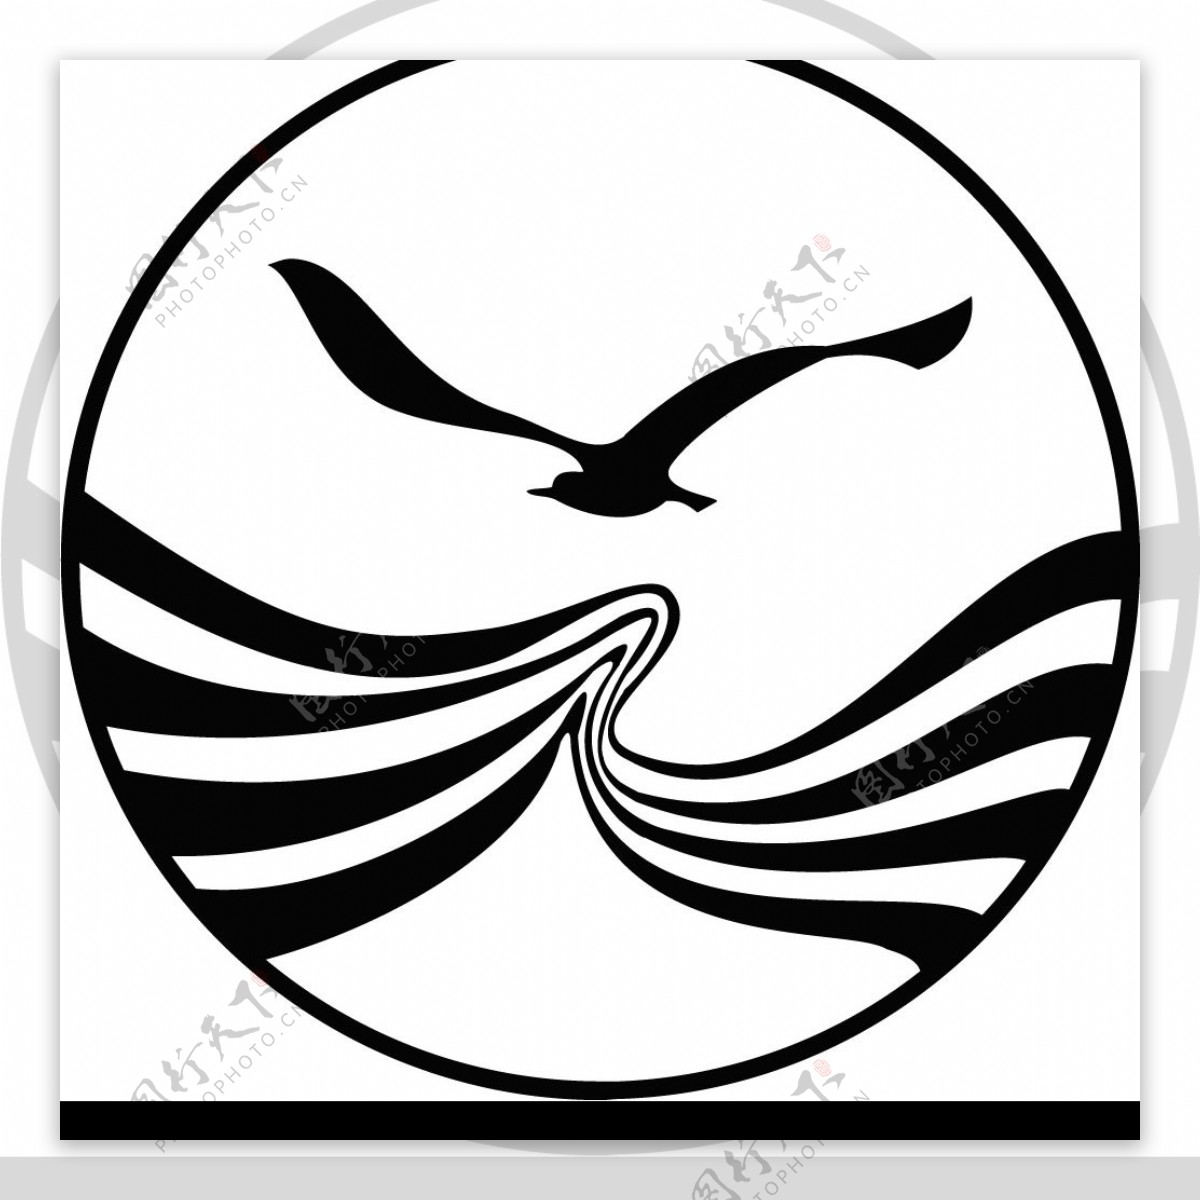 四川航空logo图片